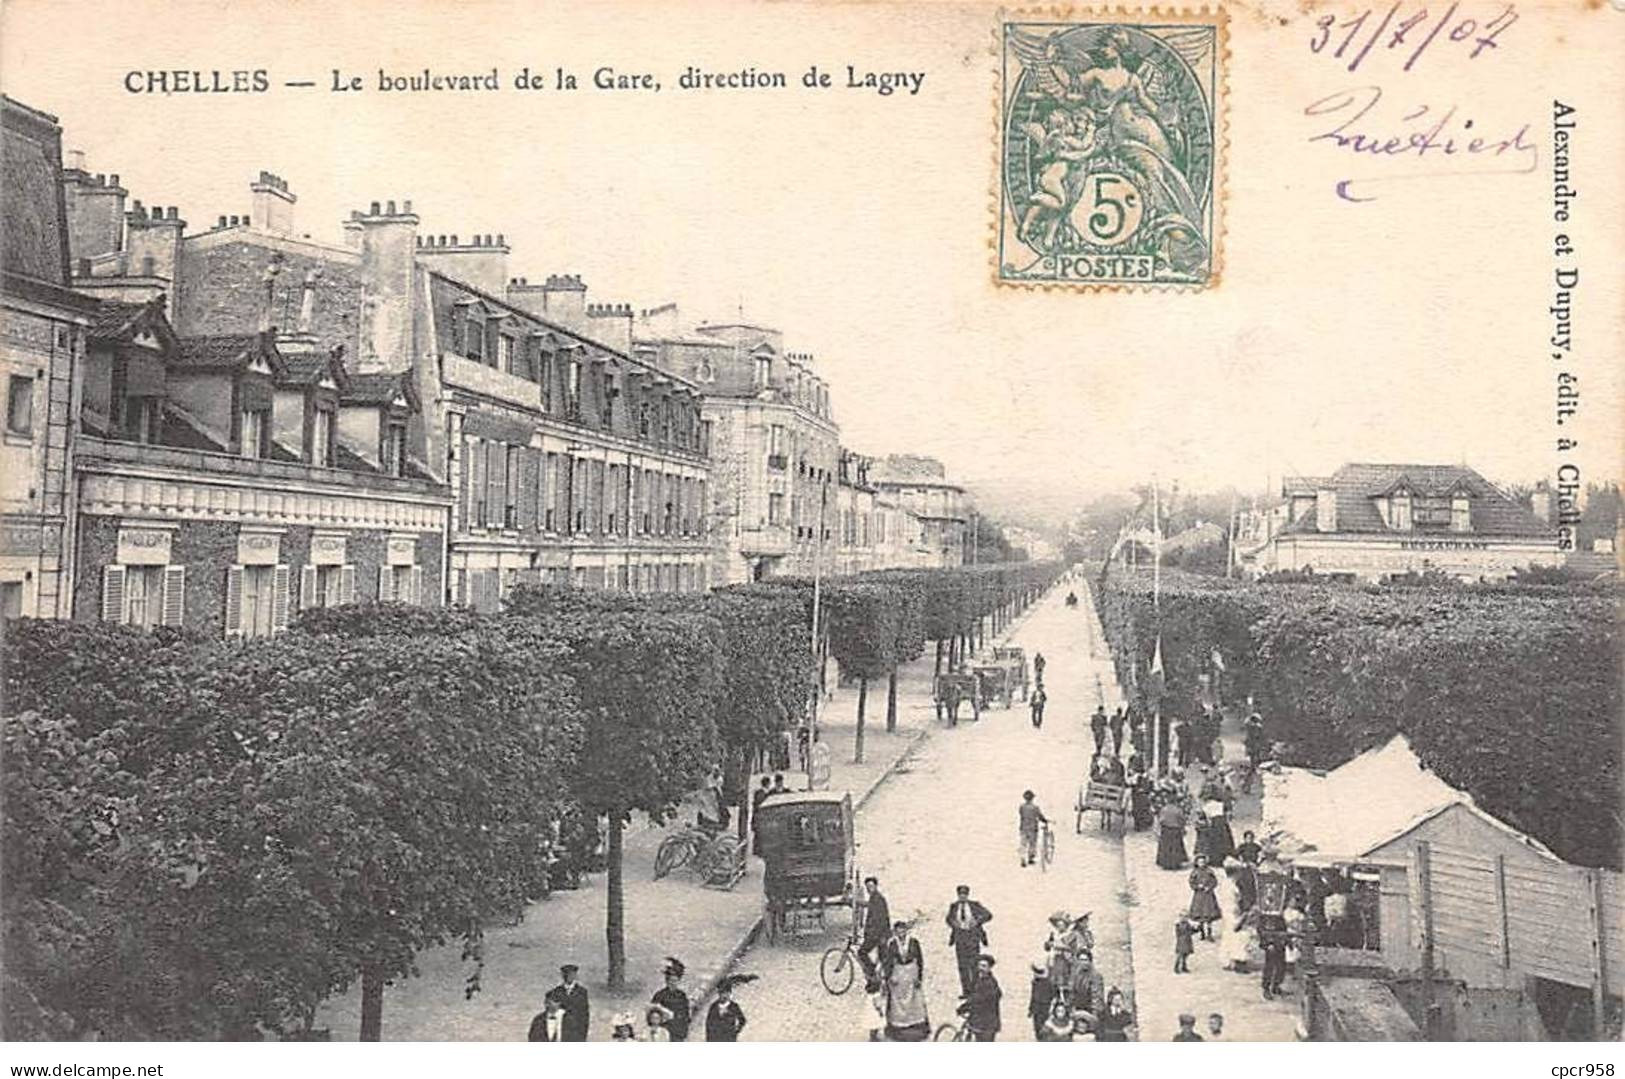 77 - CHELLES - SAN41614 - Le Boulevard De La Gare - Direction De Lagny - Chelles